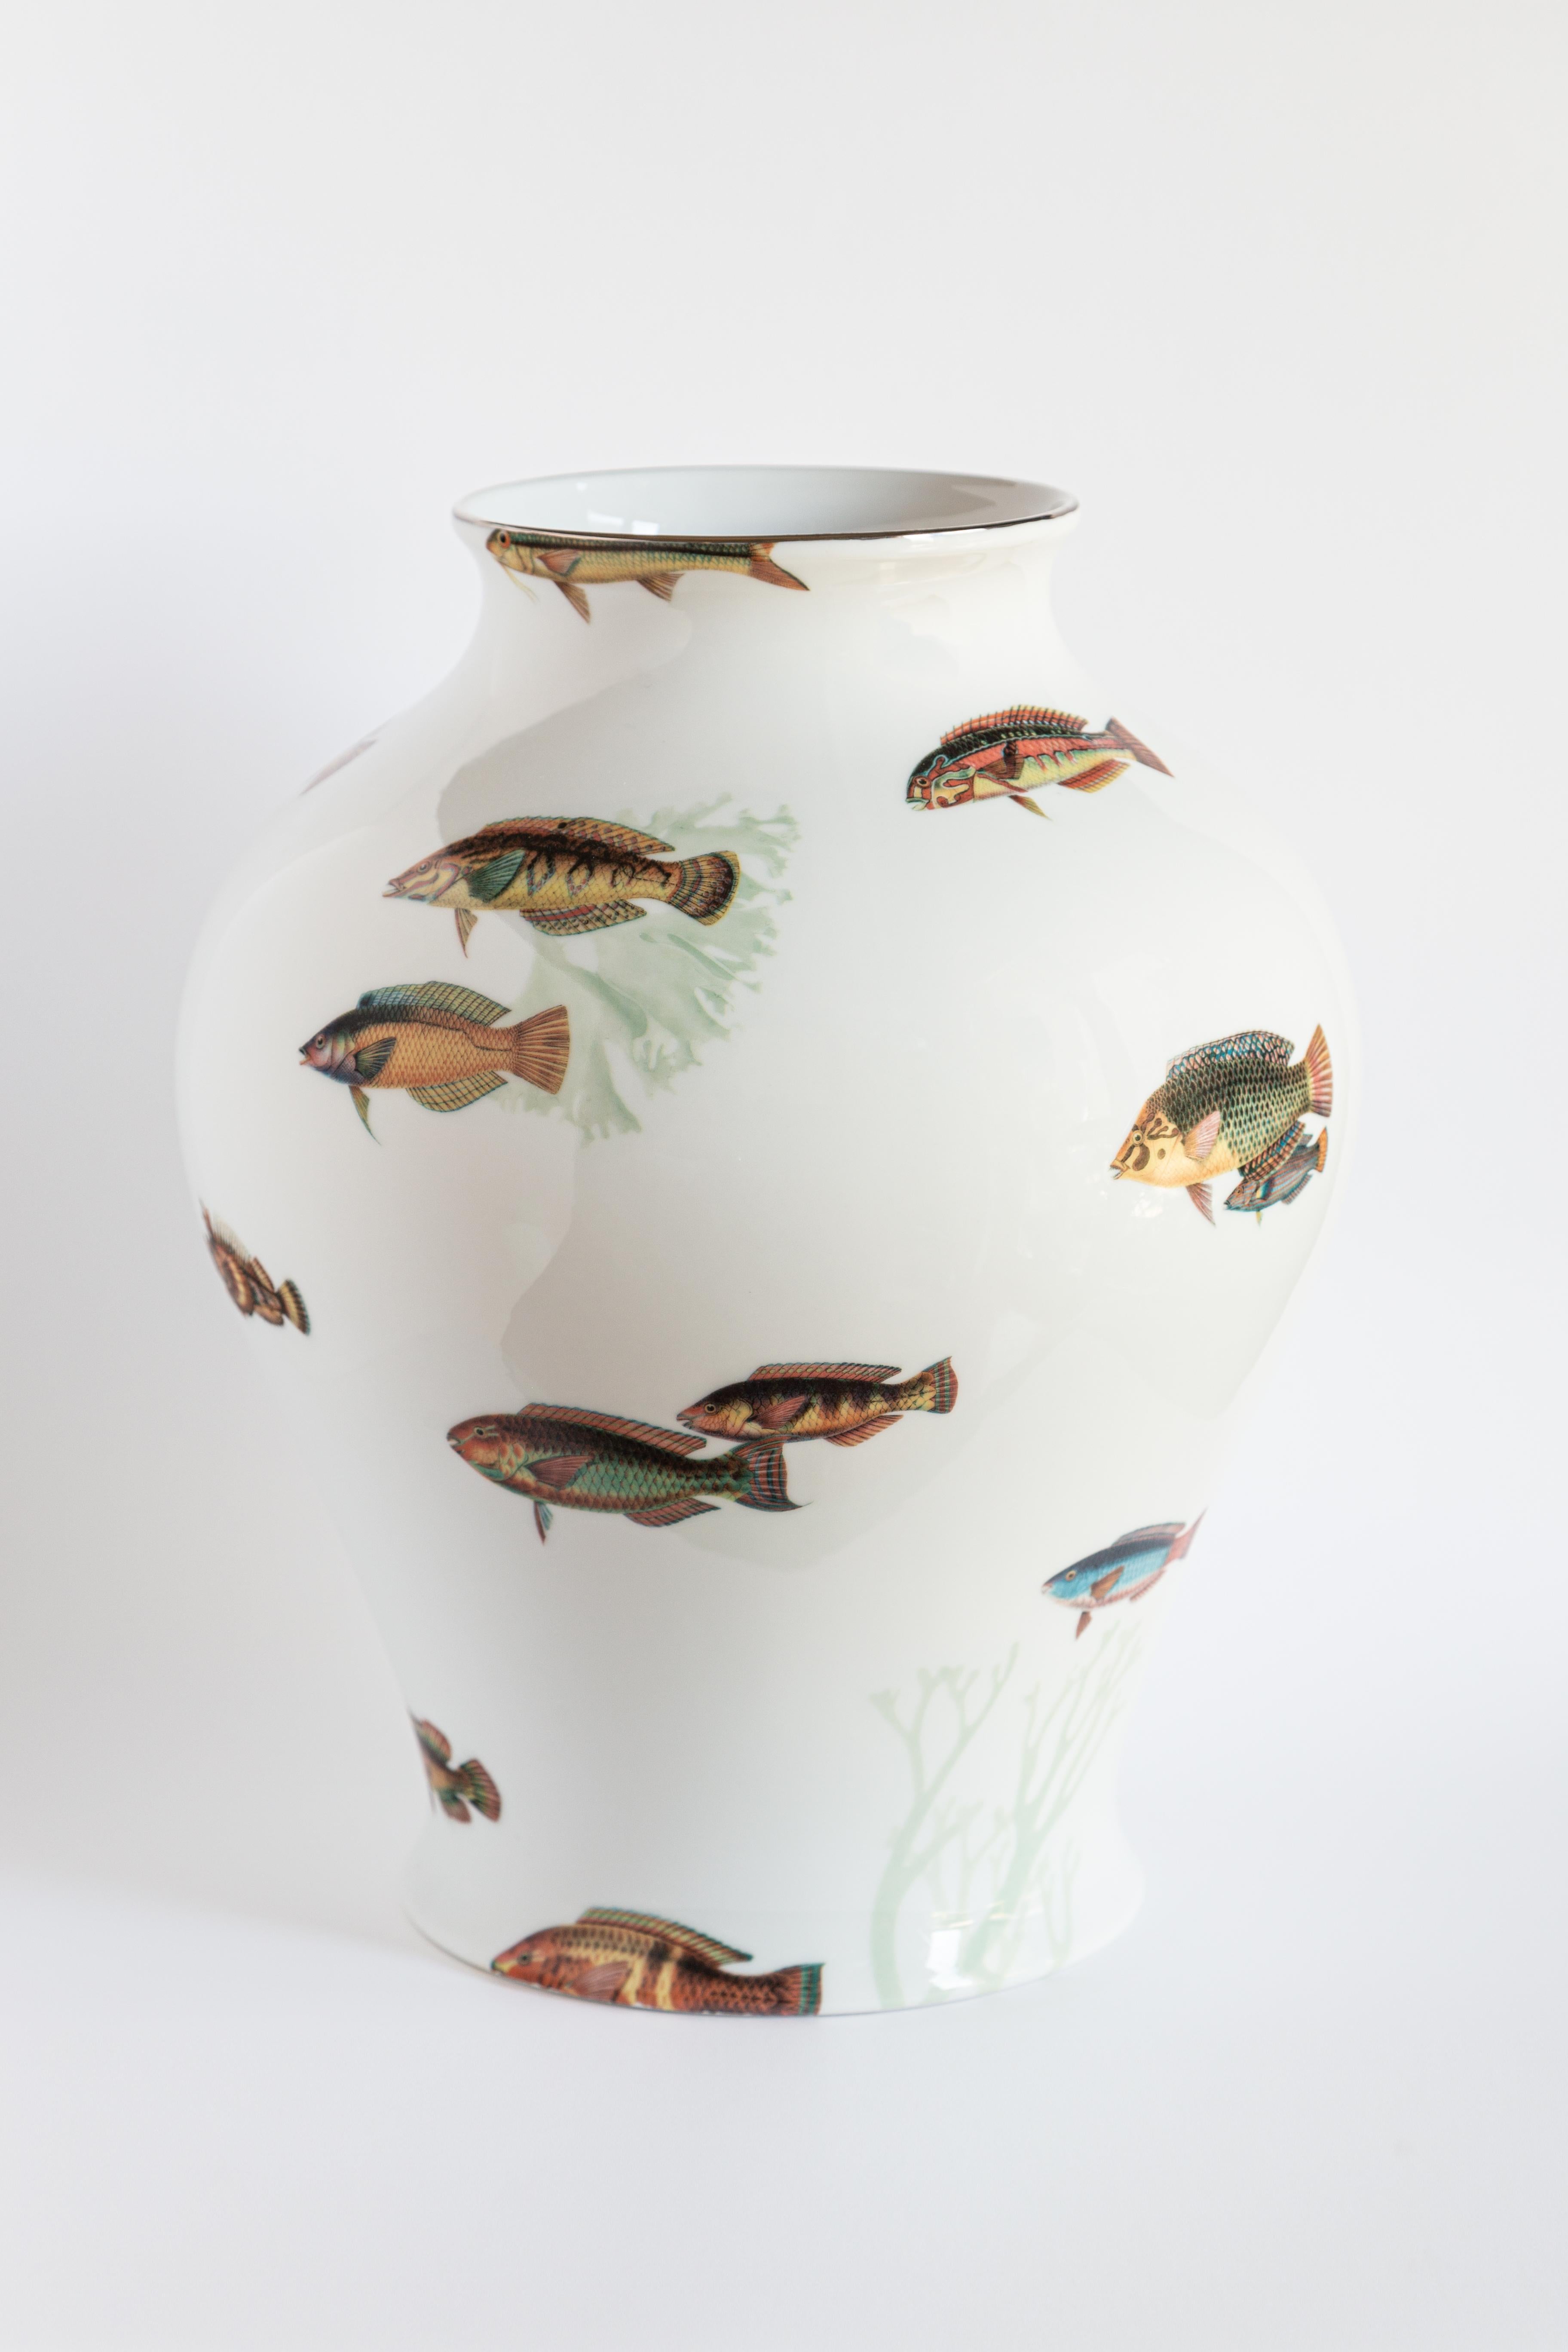 Das klassische Design dieser Porzellanvase wird durch Retro-Dekorationen mit modernem Touch wieder zum Leben erweckt. Das Korallenriff der Amami-Inseln in der Nähe von Japan inspirierte dieses Design, bei dem tropische Fische die Oberfläche der Vase